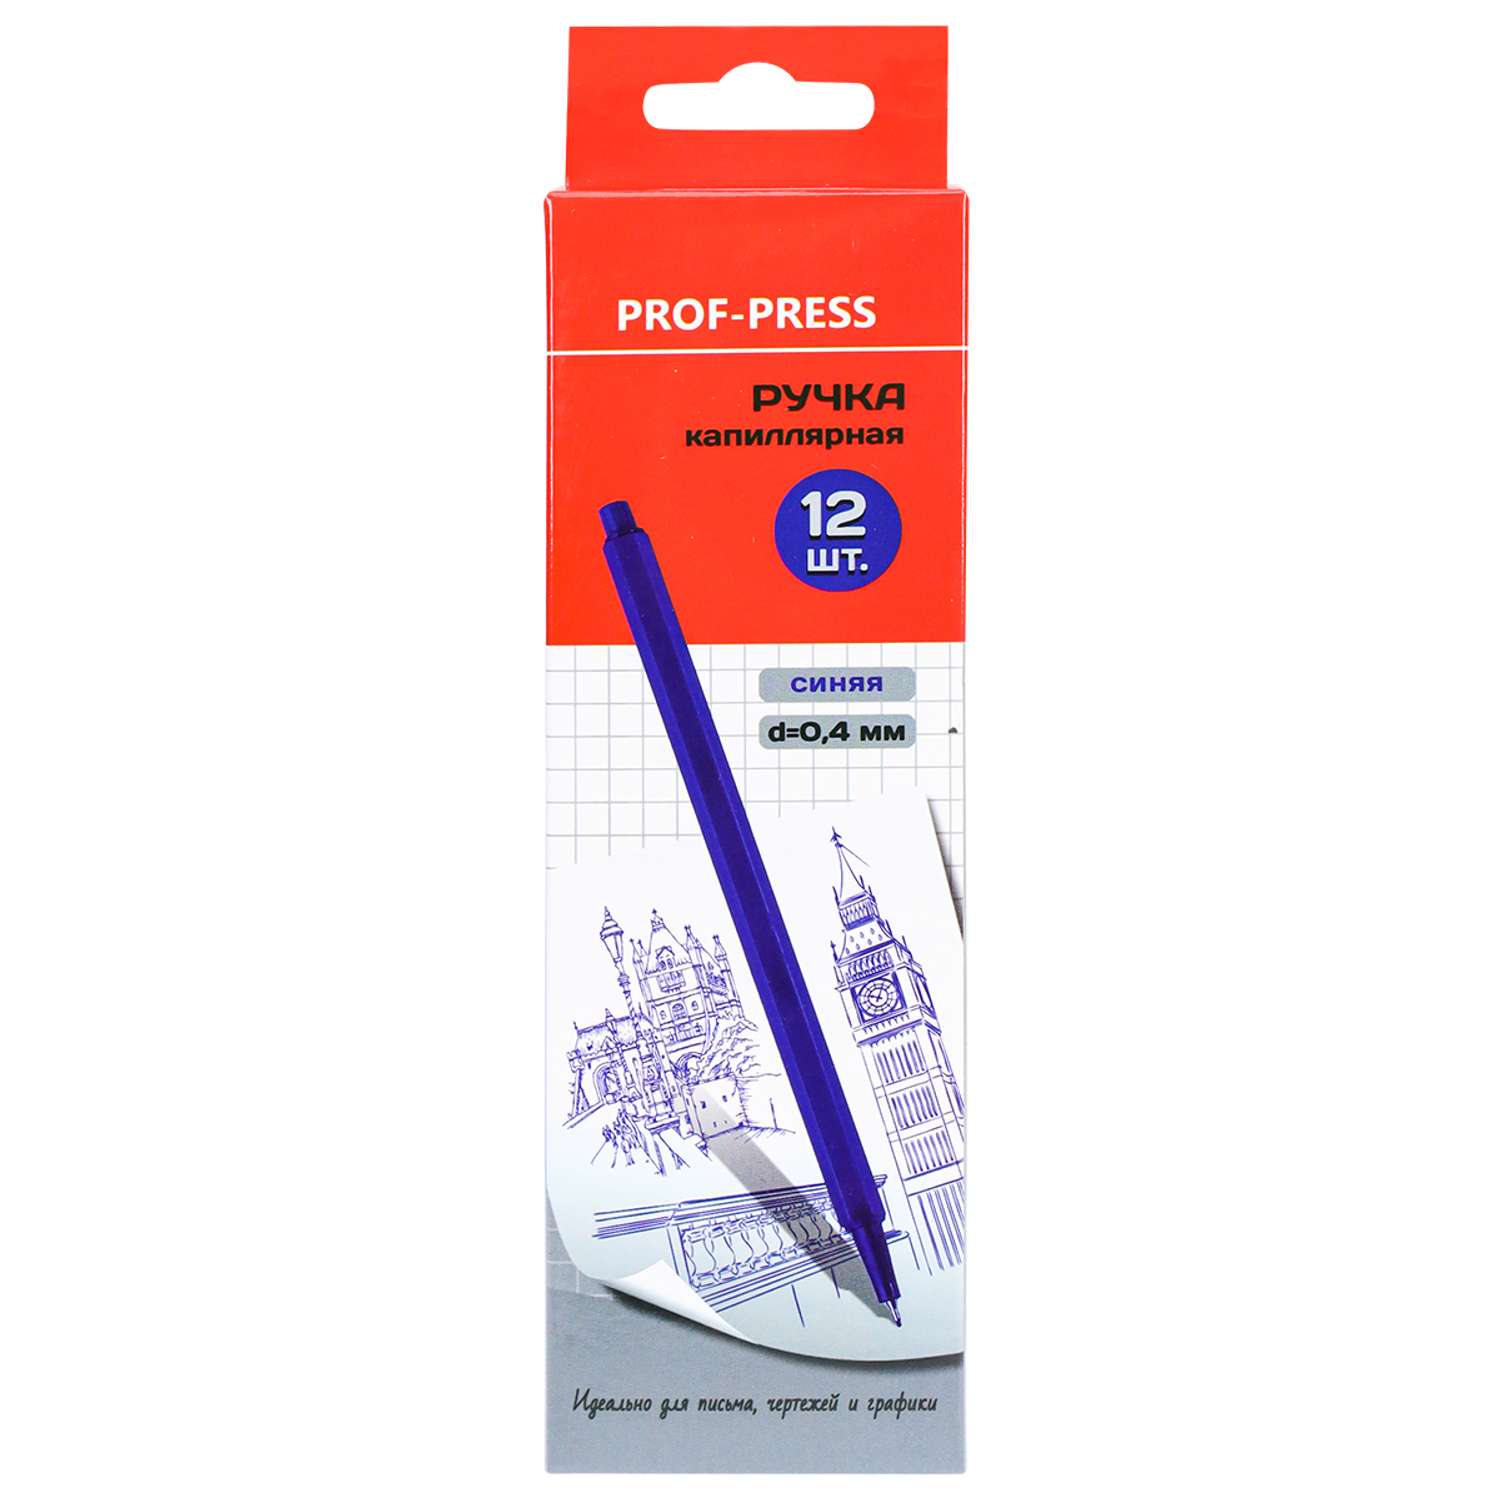 Ручка капиллярная Линер Prof-Press синяя гексоганальный корпус 12шт - фото 2